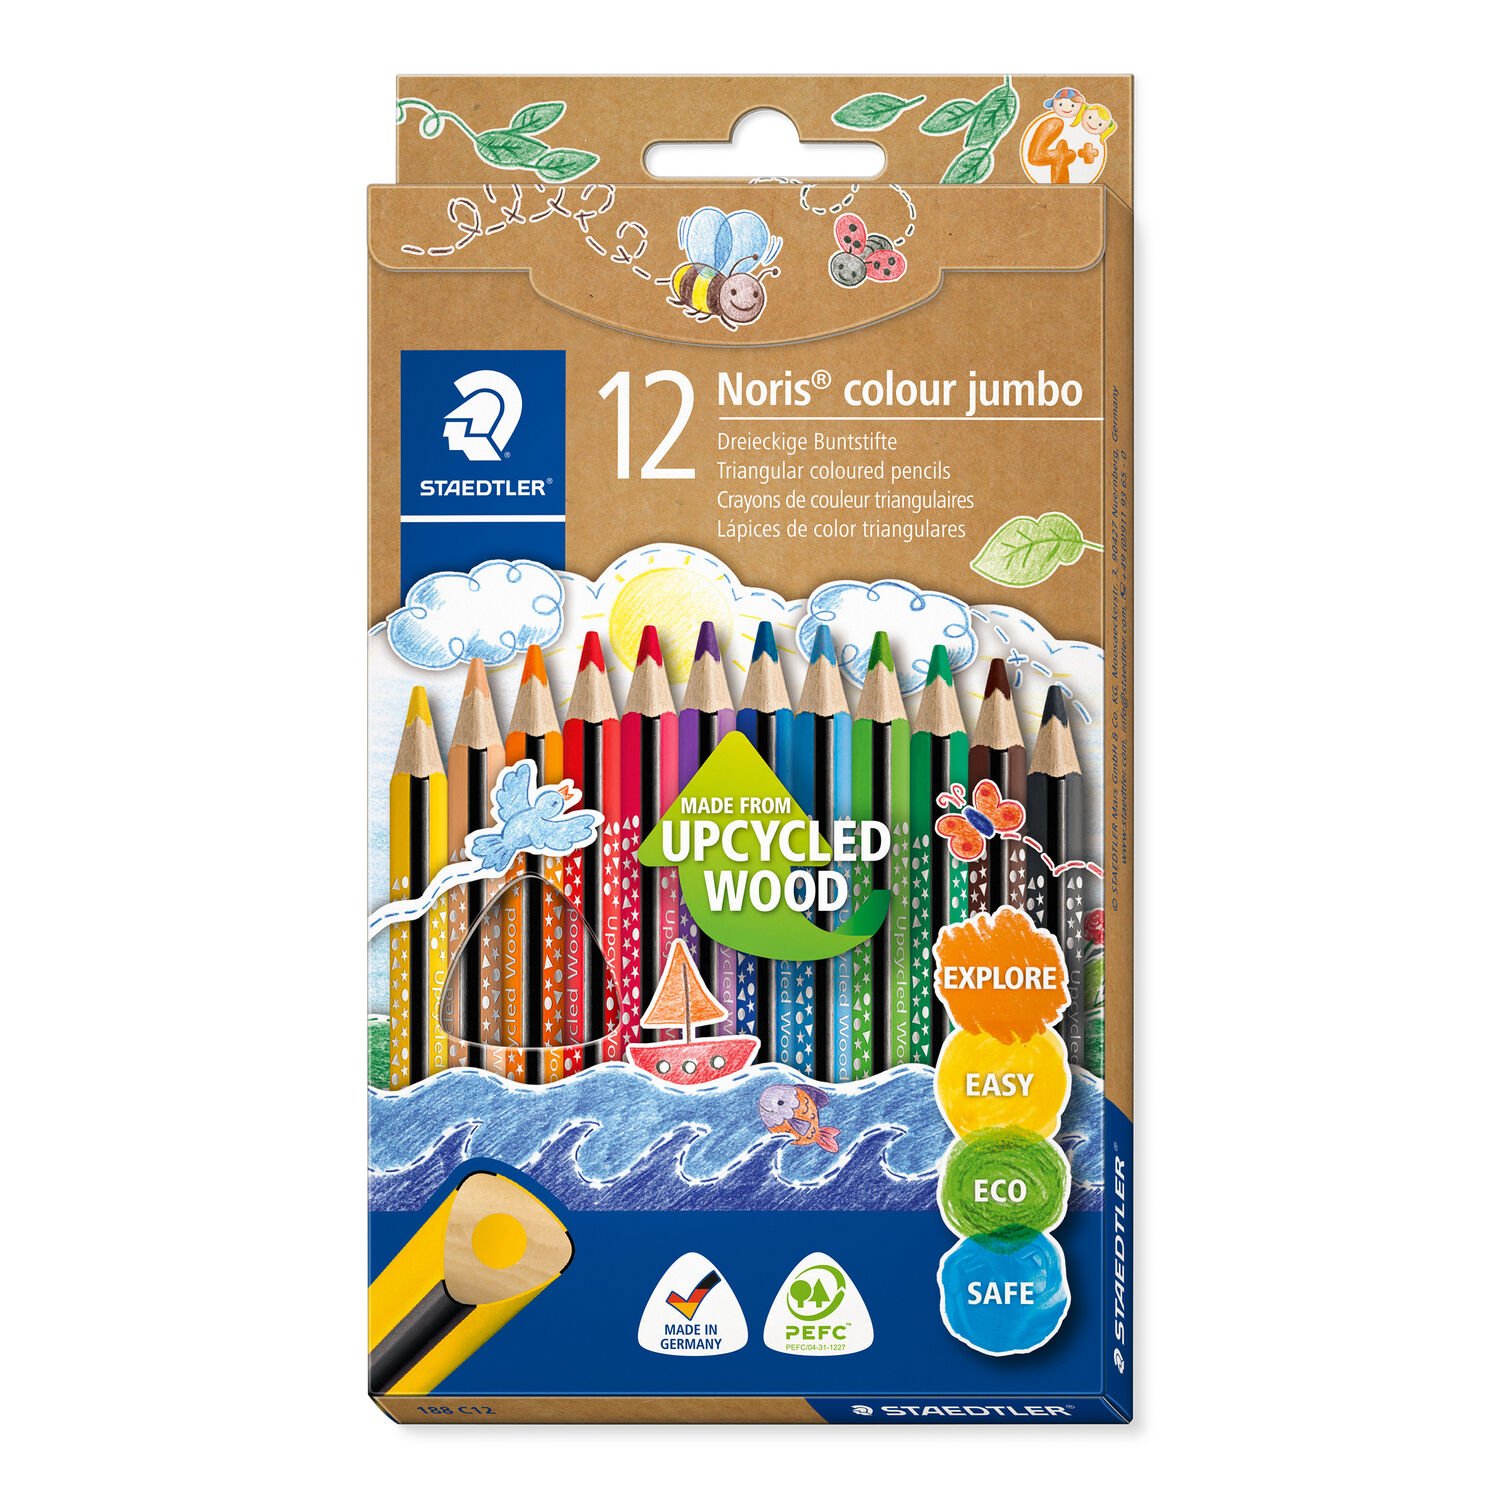 Kartonetui mit 12 Buntstiften in sortierten Farben